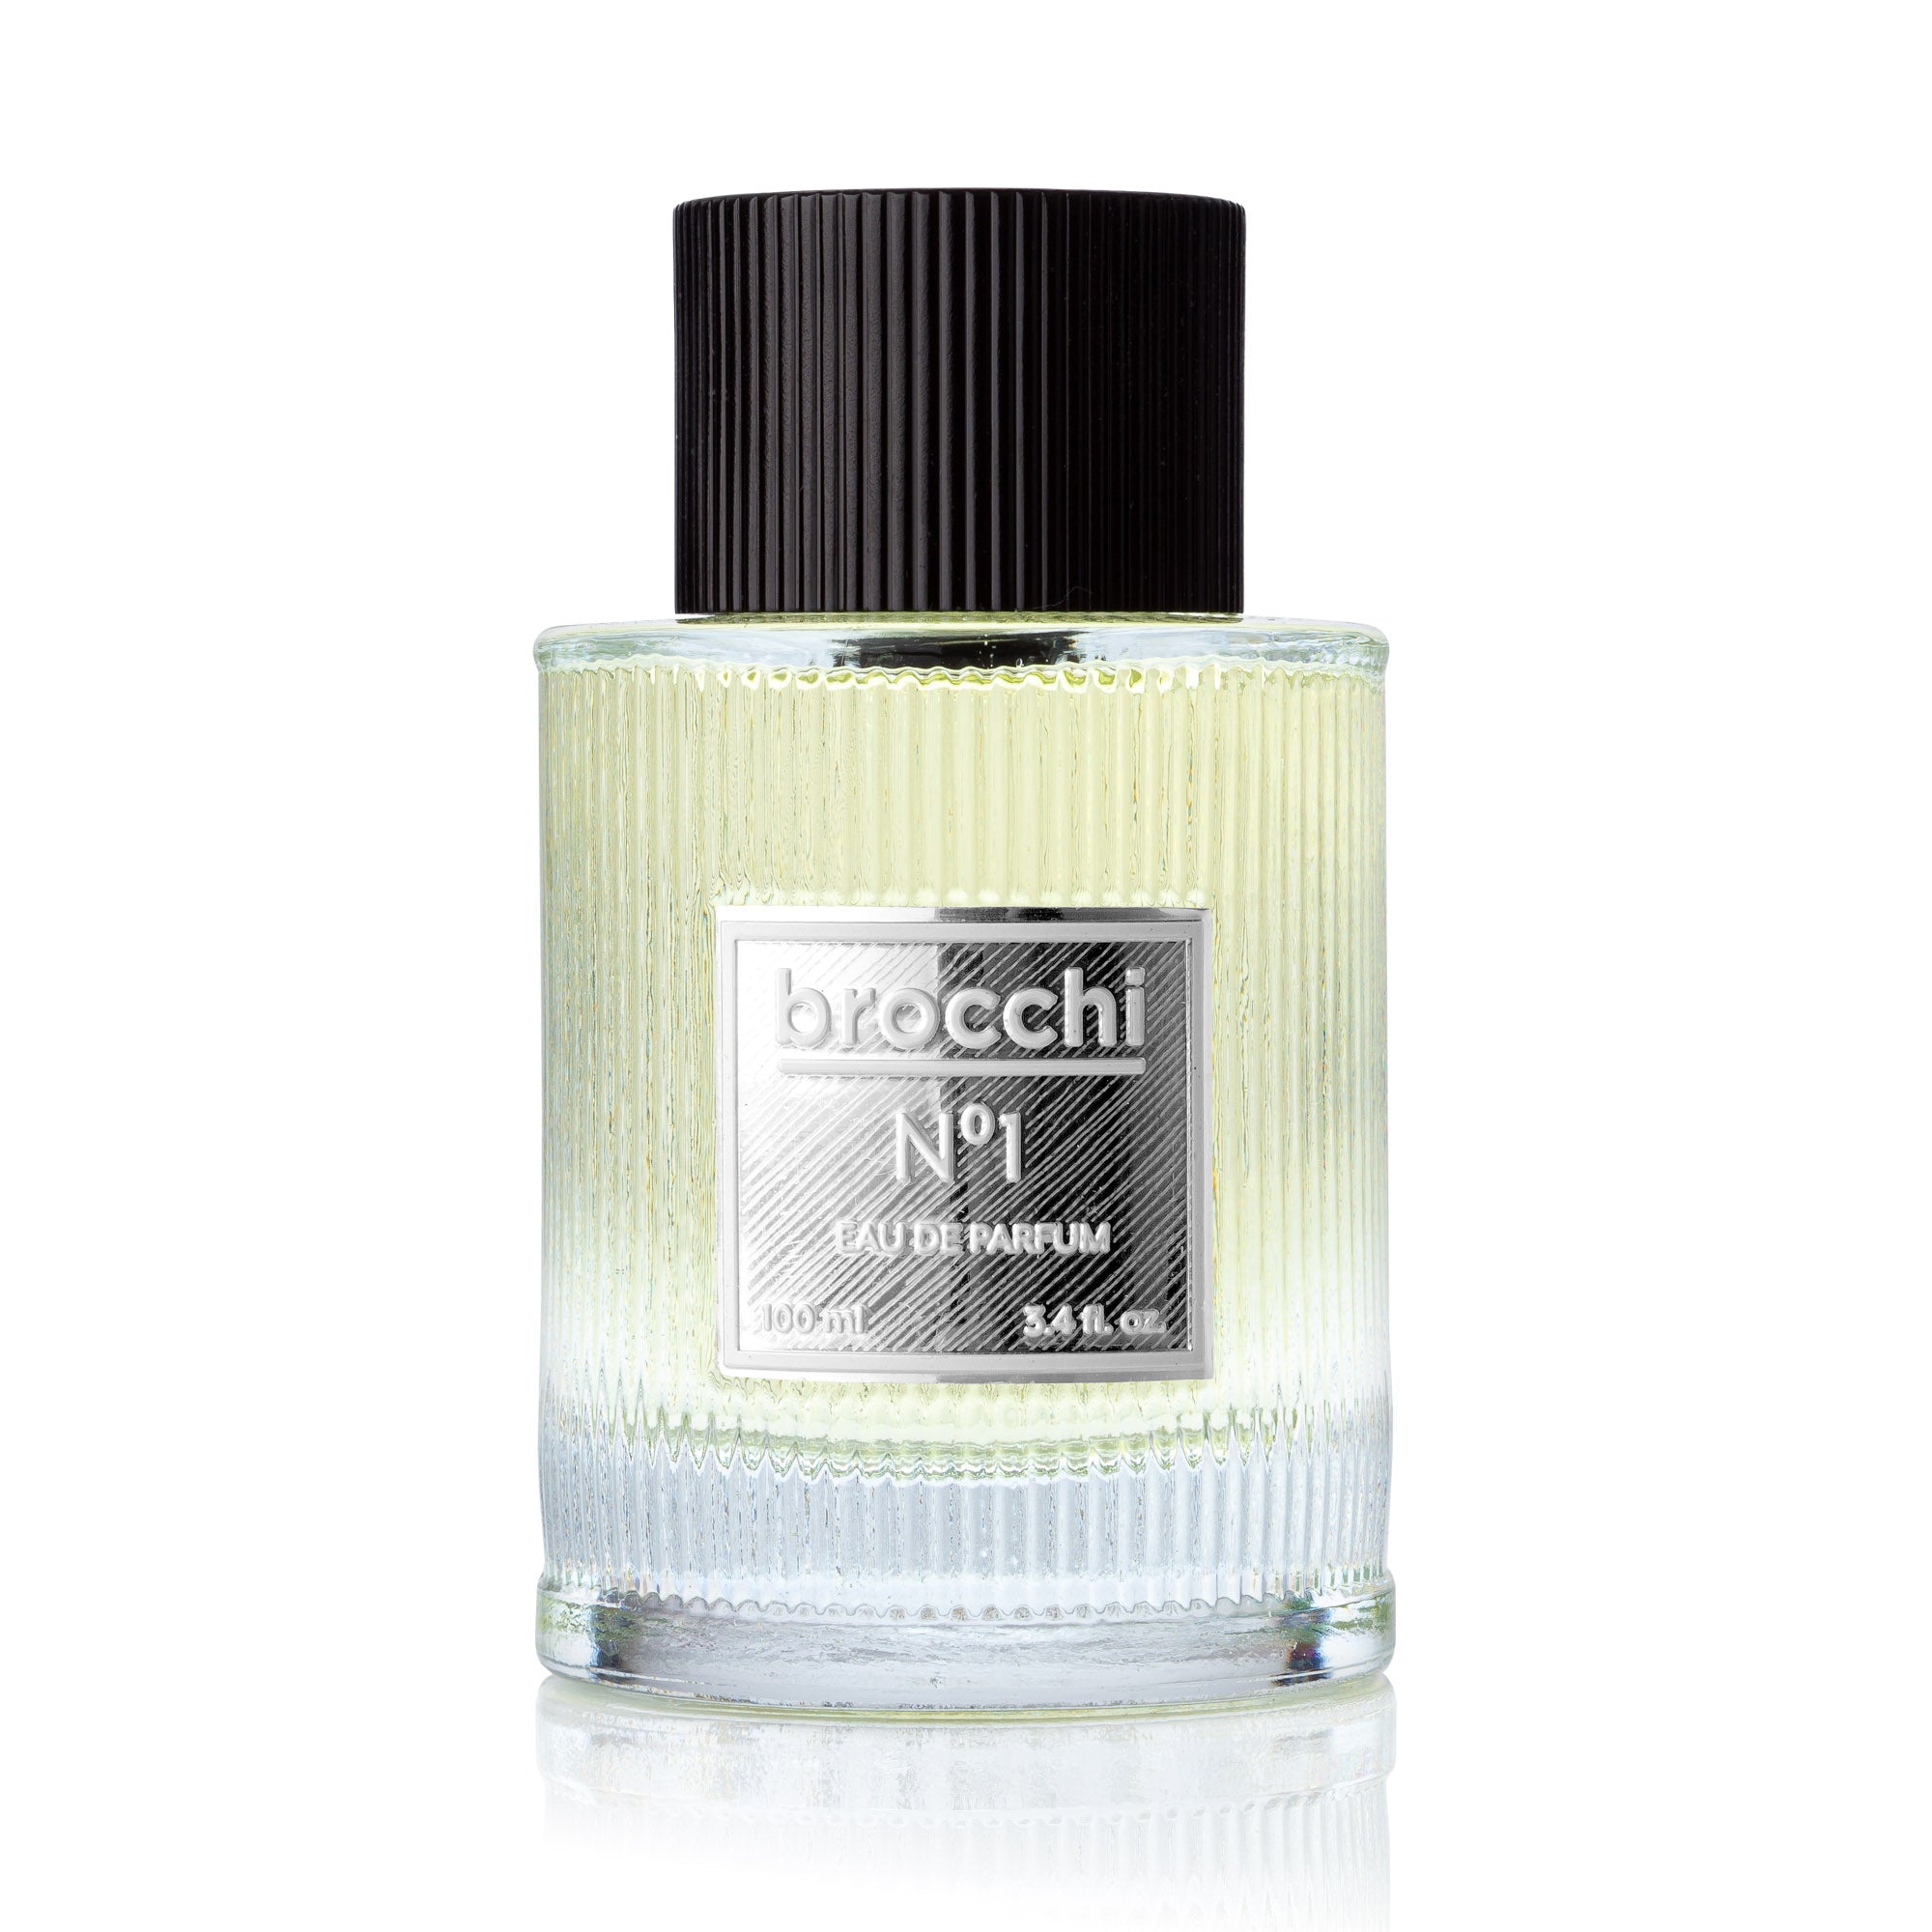 Brocchi | Nº1 Eau De Parfum | 3.4oz